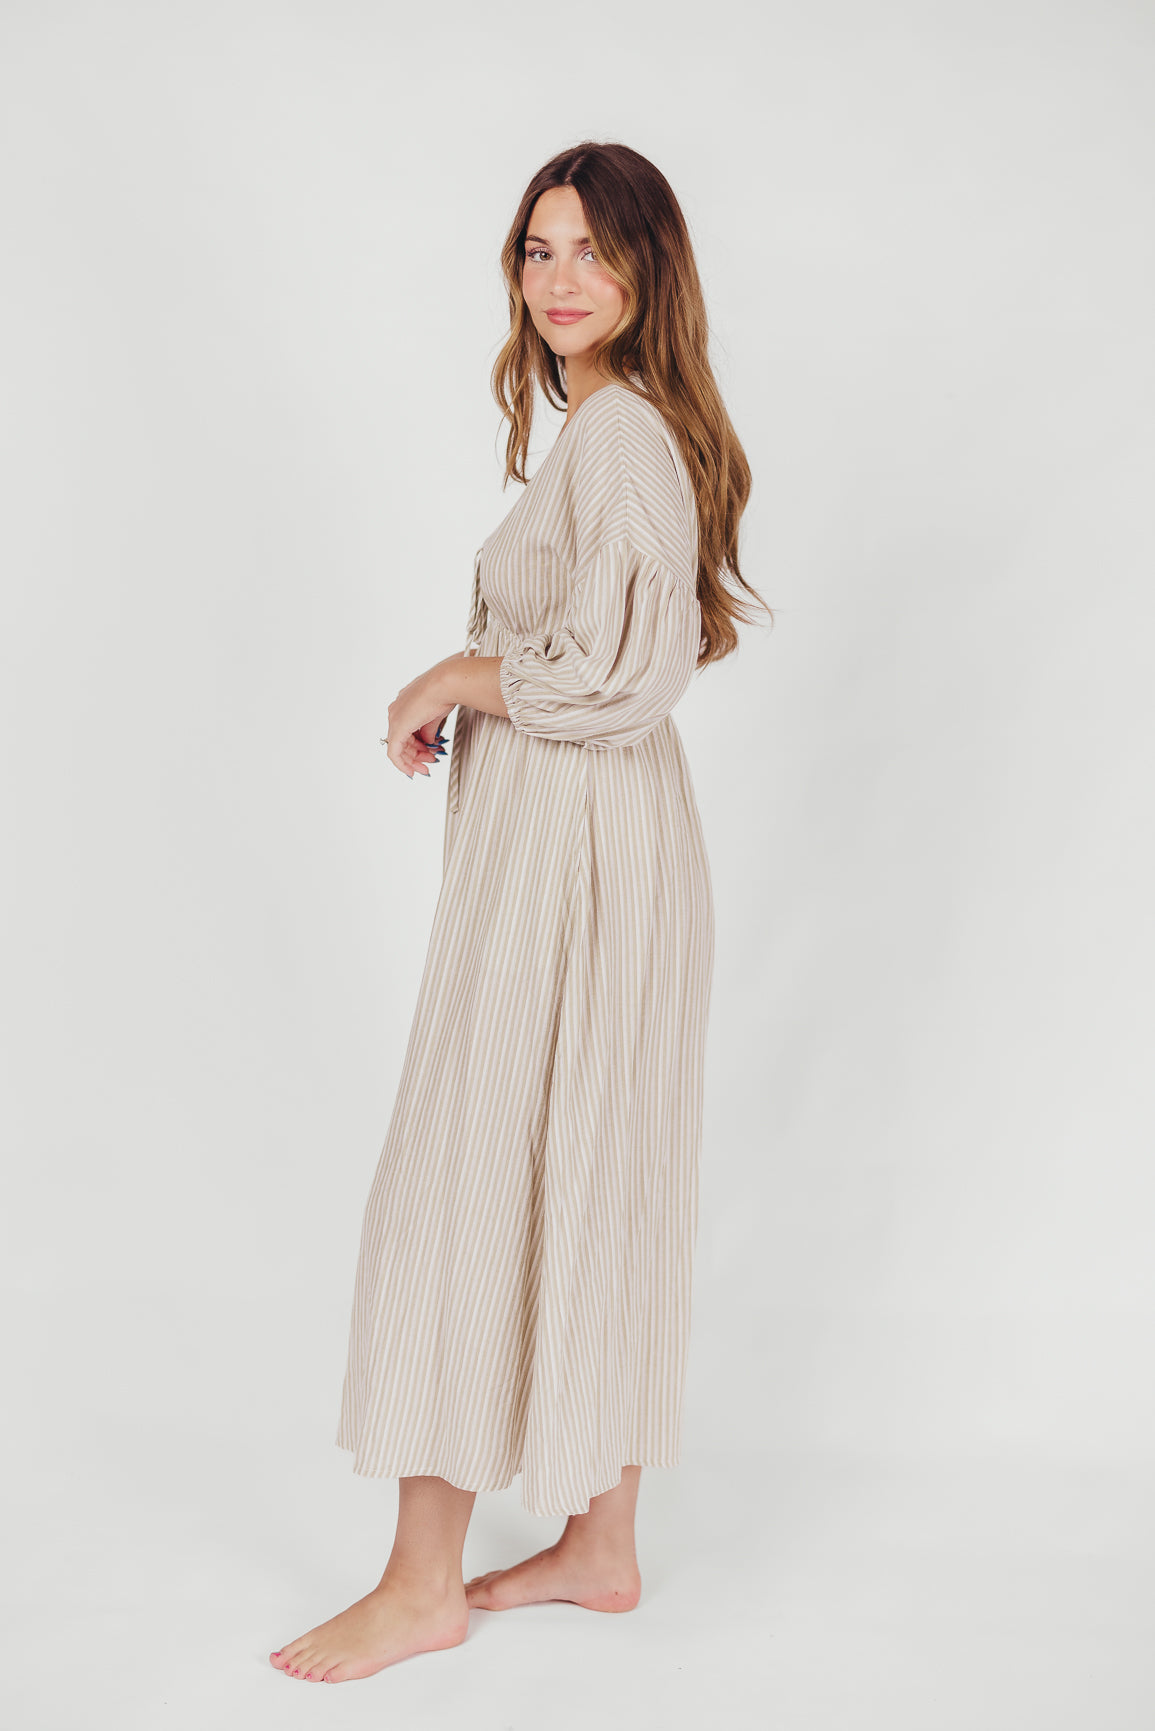 Sasha 100% Cotton Striped Midi Dress in Thyme - Bump Friendly